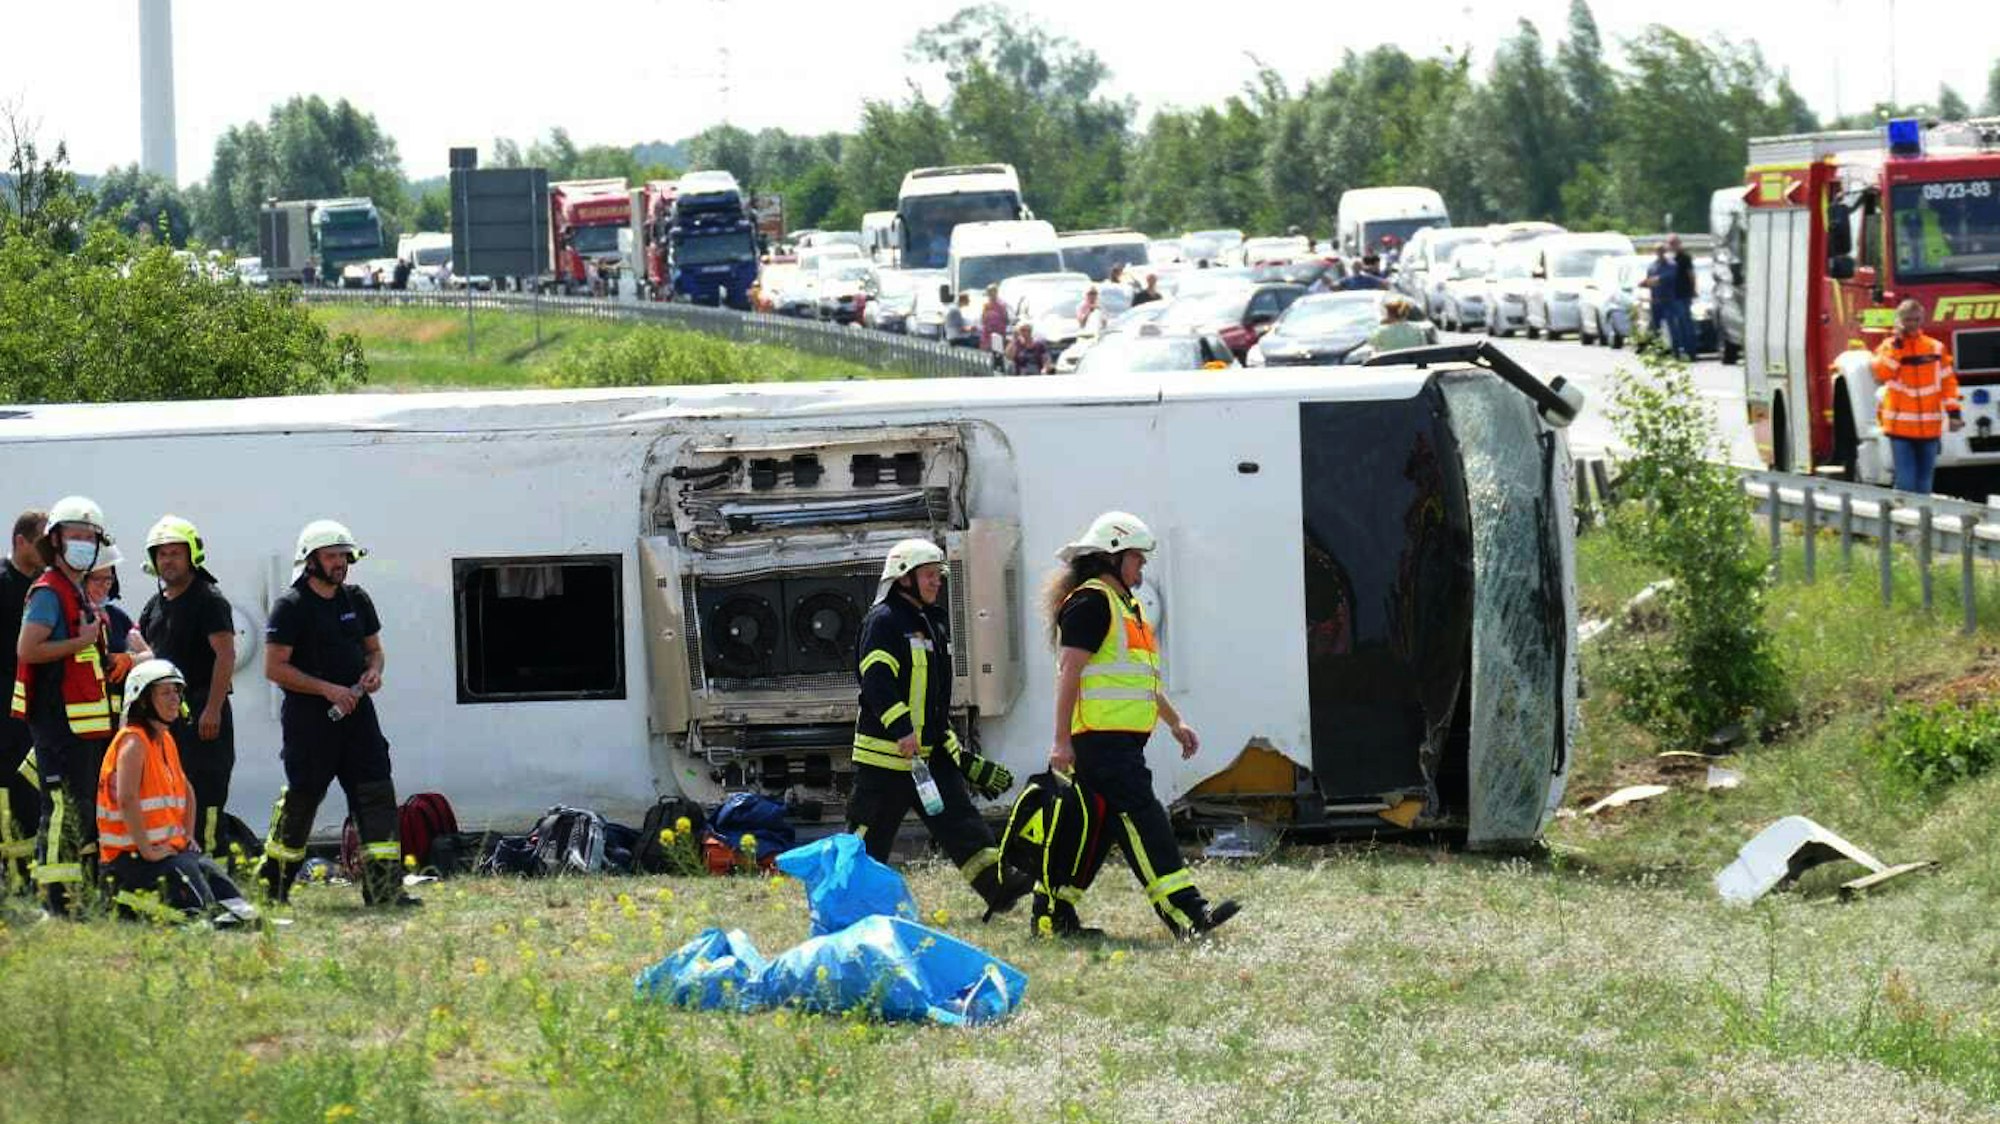 Rettungskräfte sind an der Unfallstelle im Einsatz. Auf der Autobahn 13 bei Schönwald (Dahme-Spreewald) südöstlich von Berlin ist ein Reisebus verunglückt.